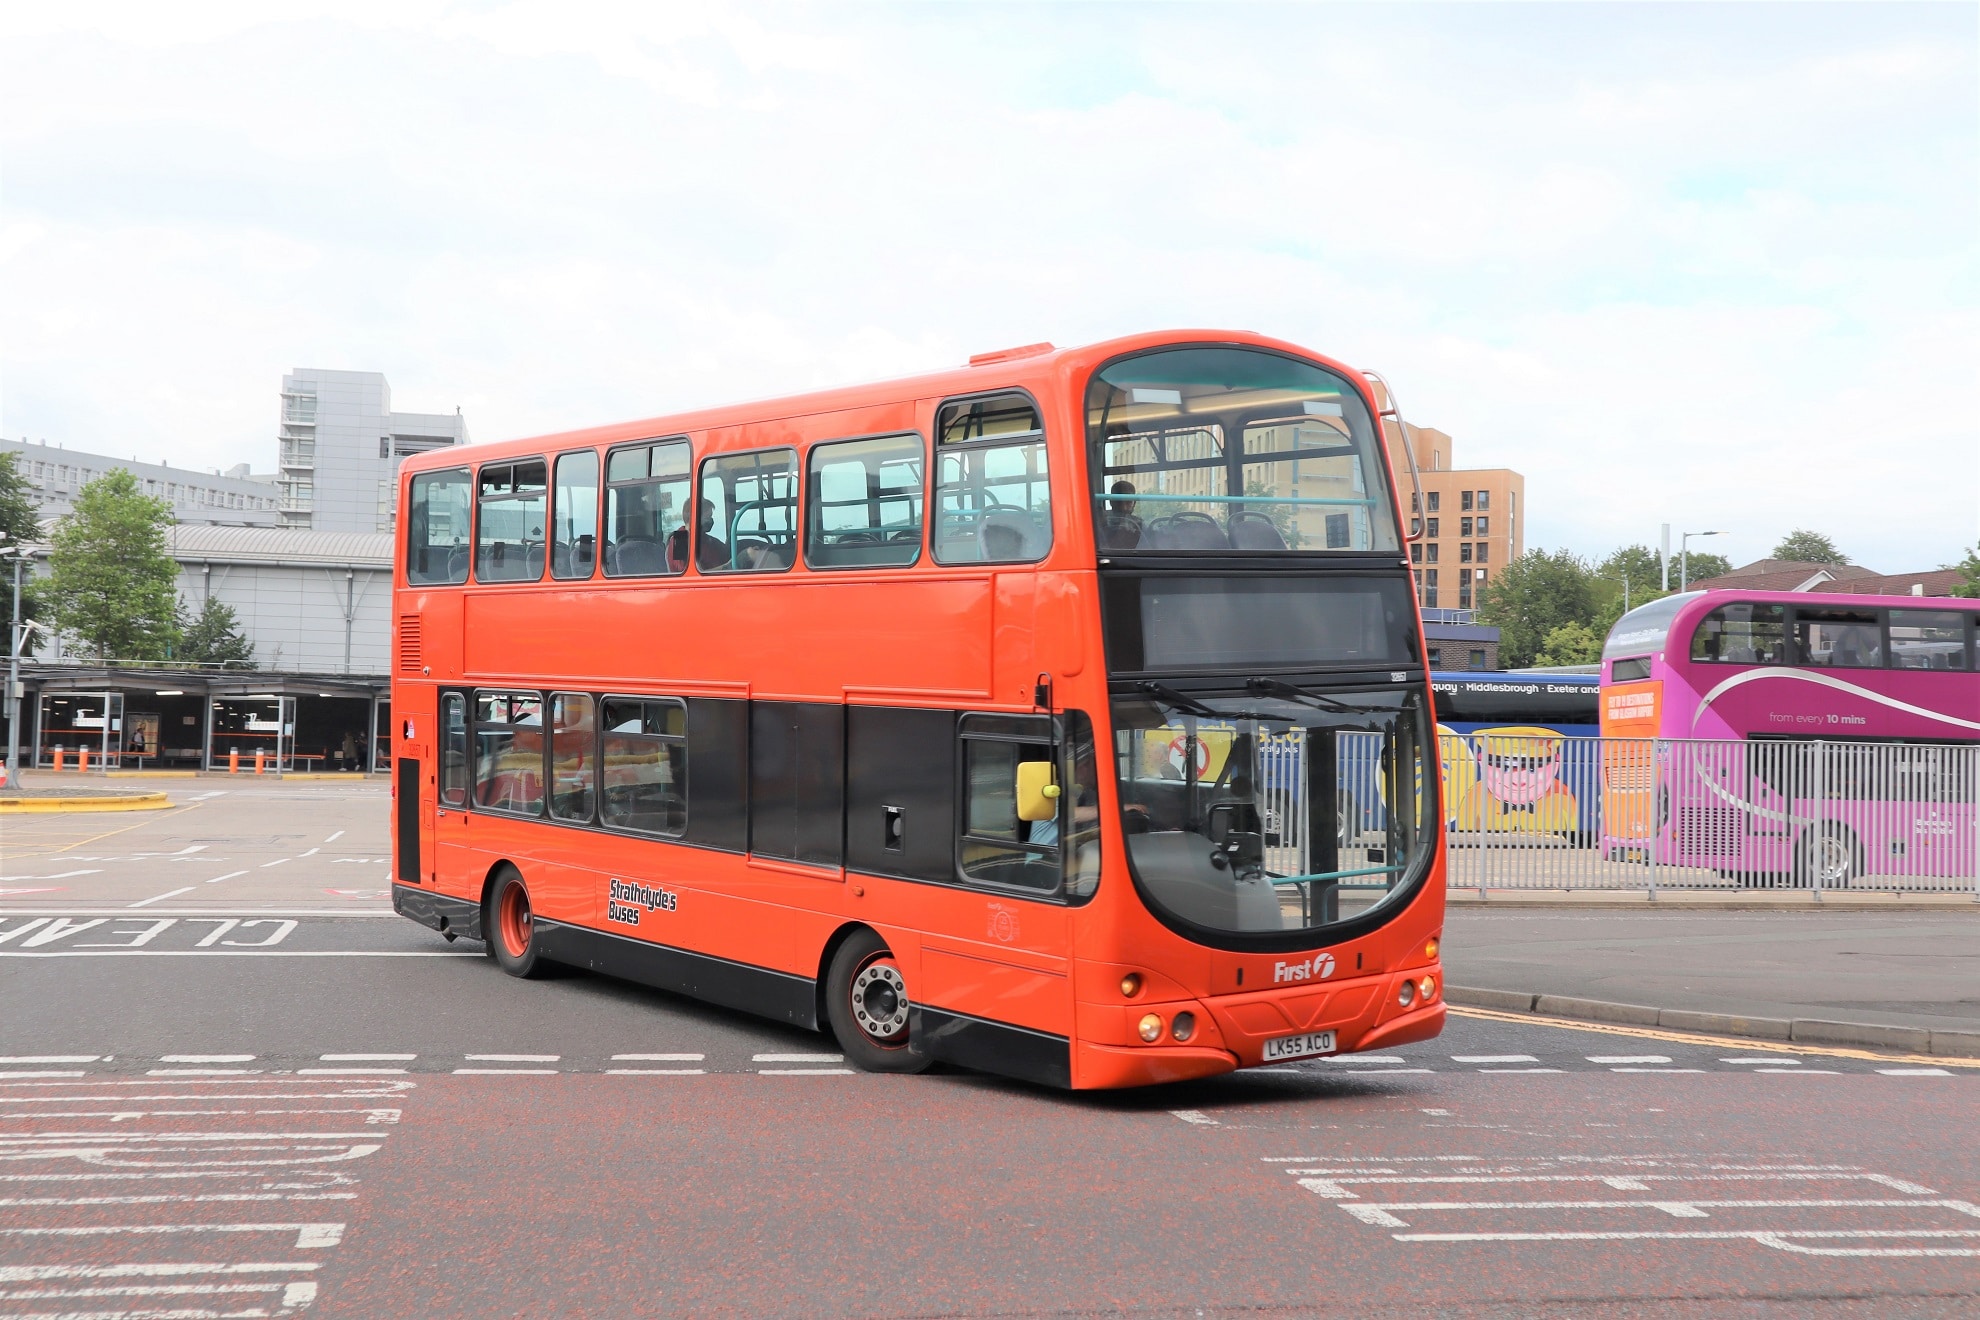 Transport for Strathclyde public transport reform proposals